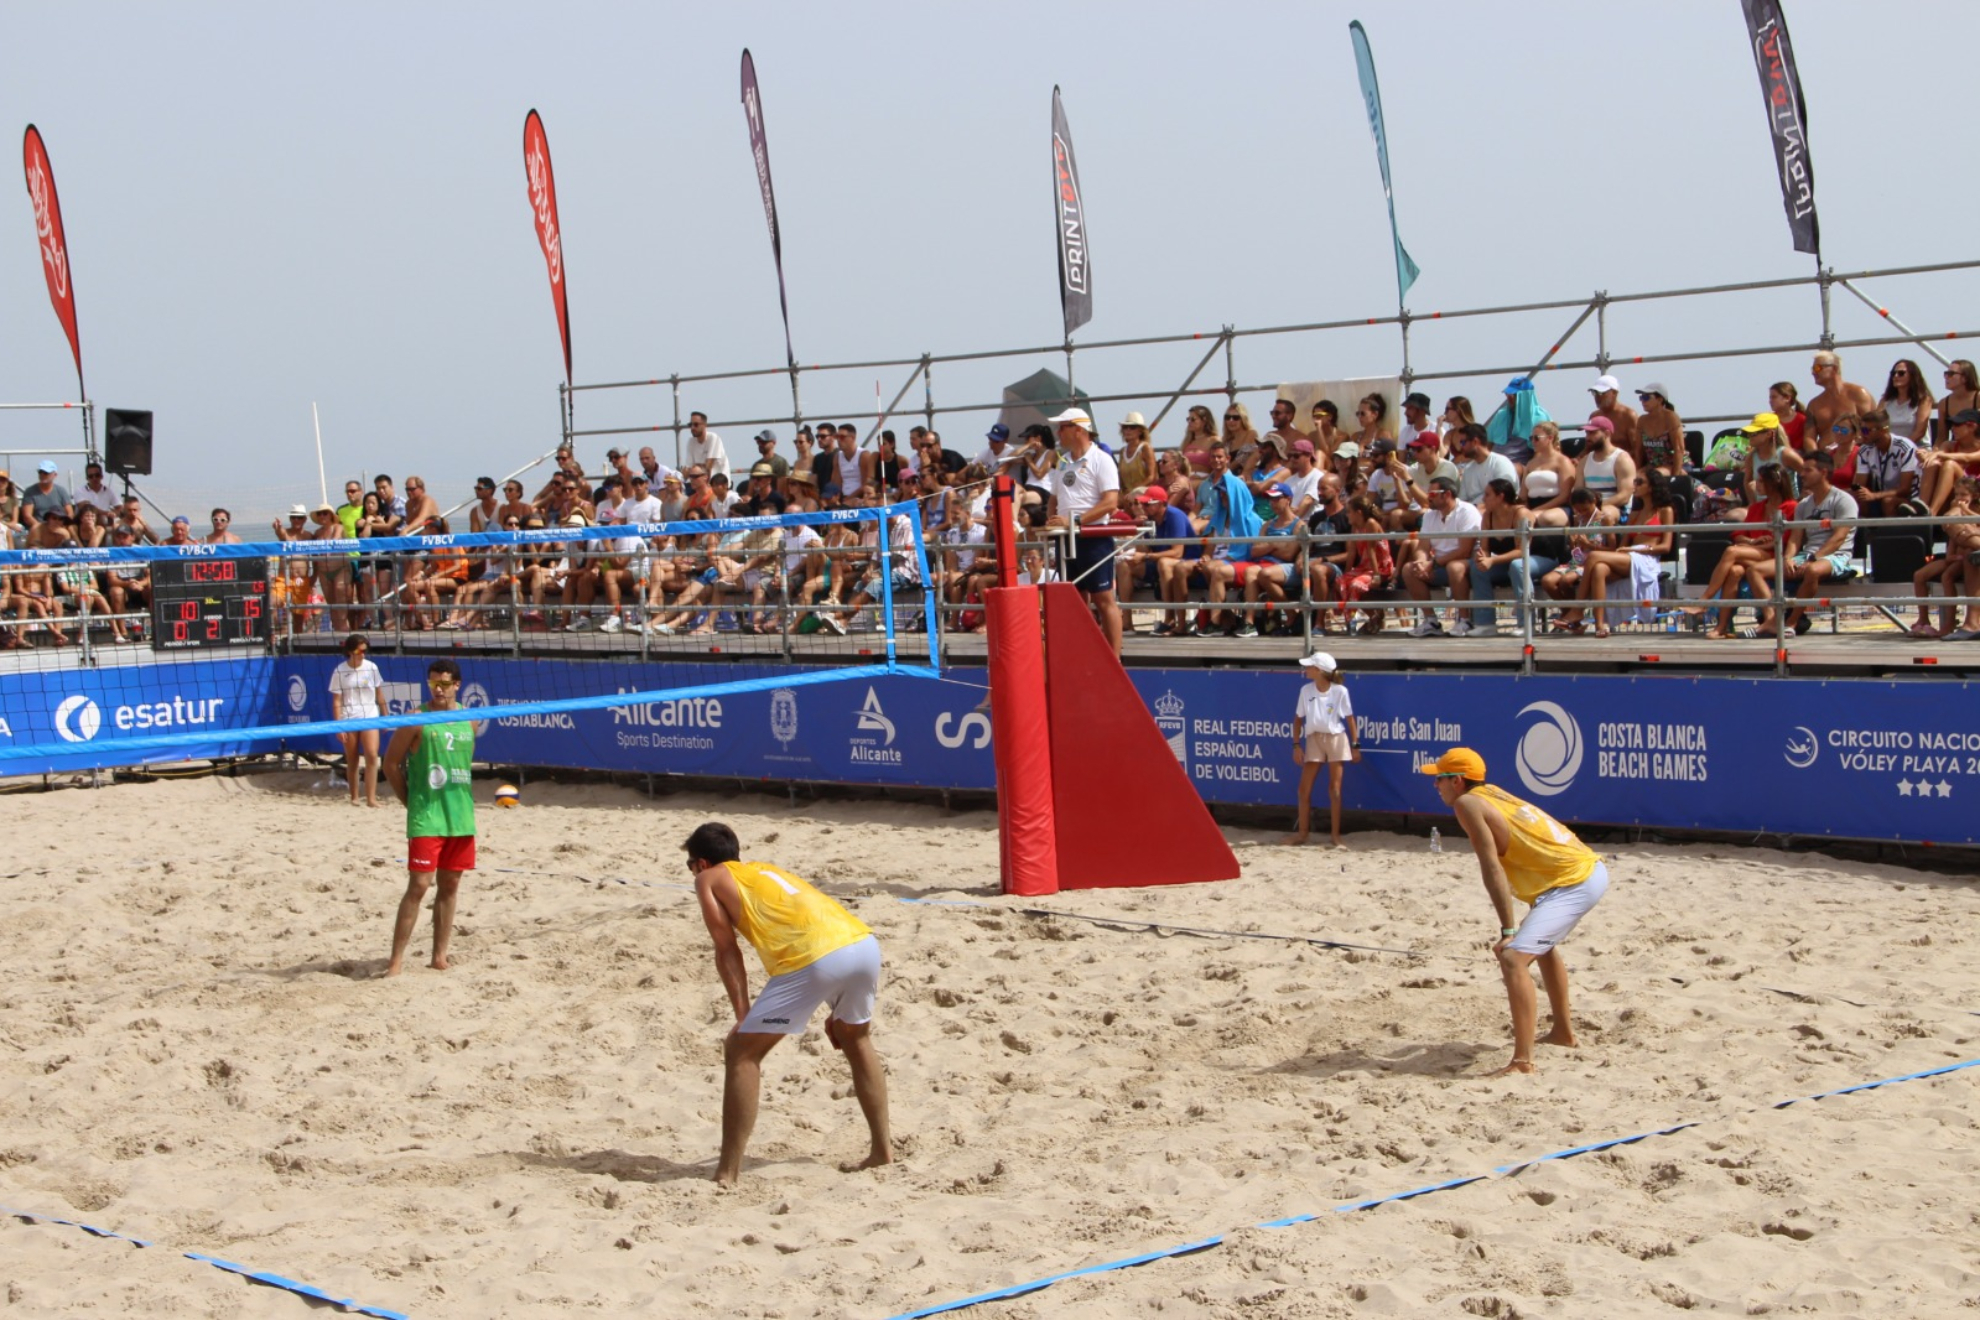 Los Costa Blanca Beach Games, todo un éxito que se consolida en Alicante en su tercera edición